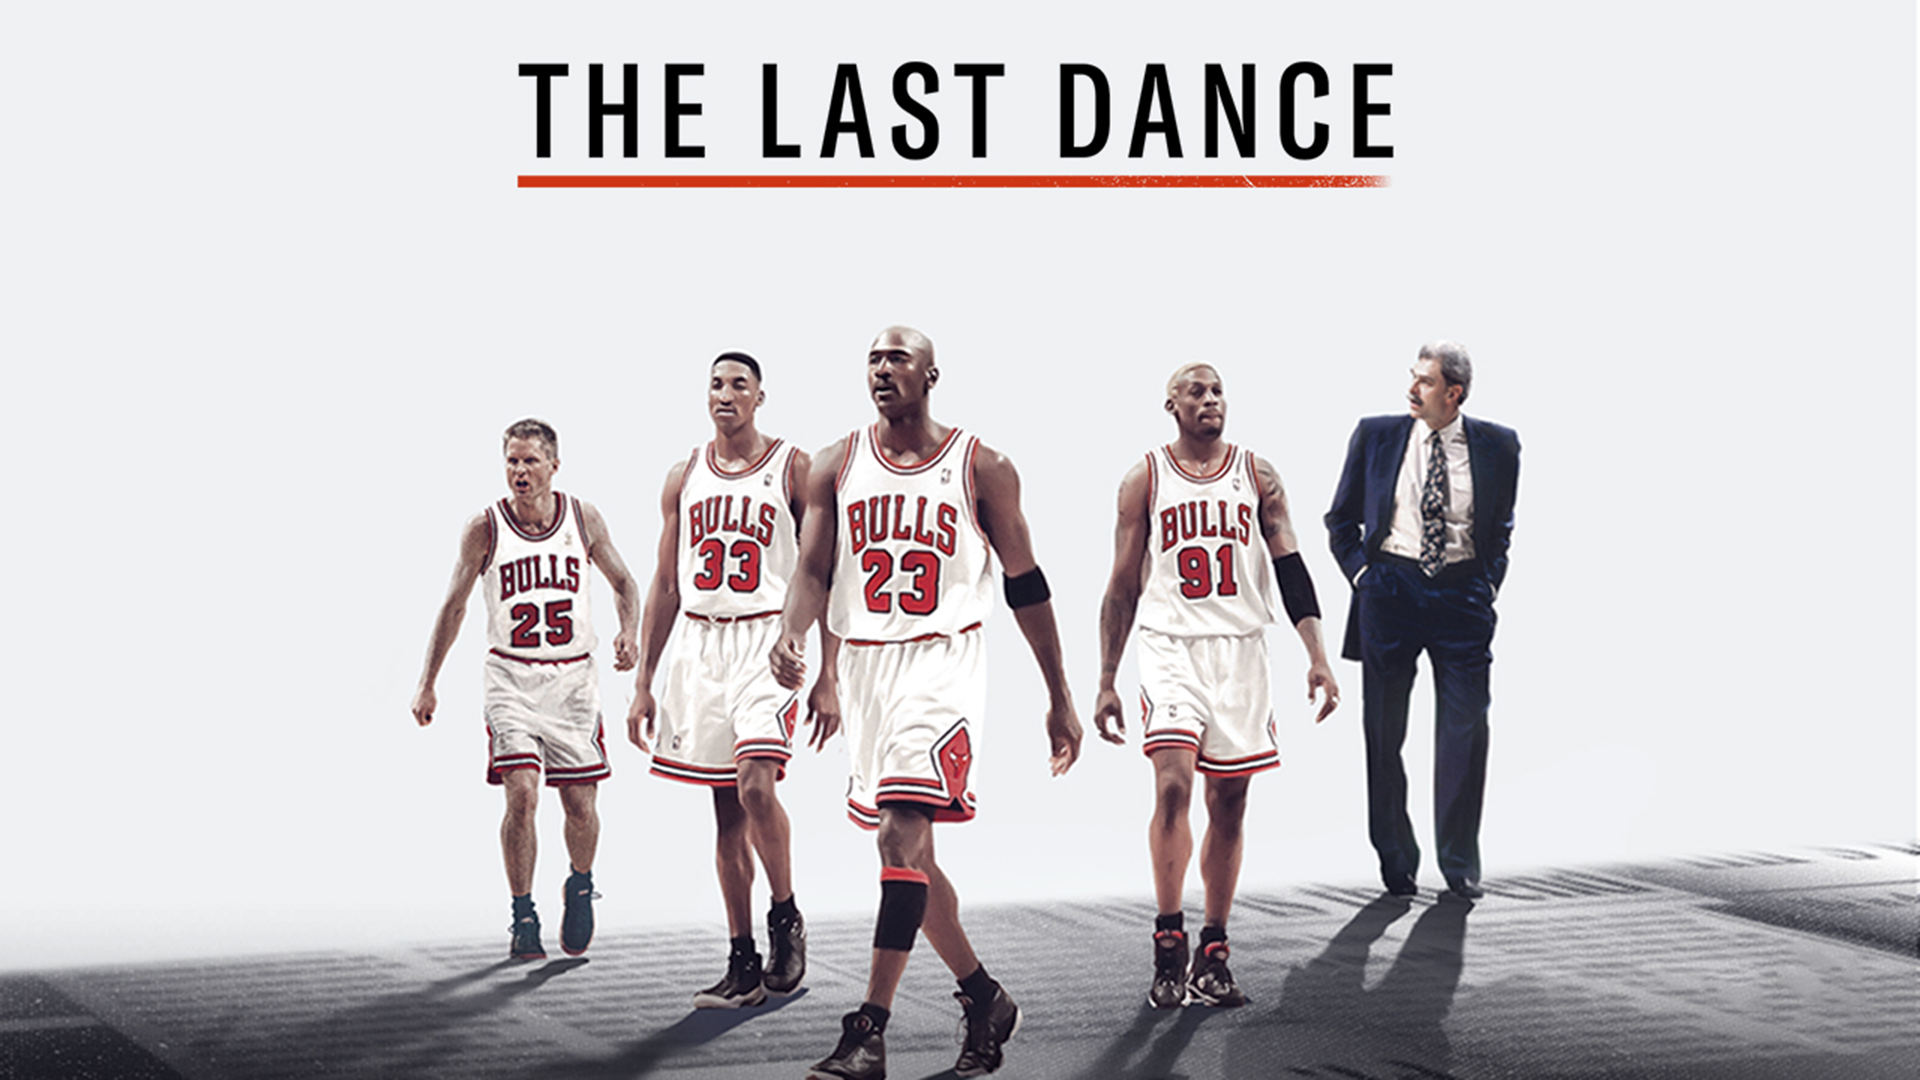 Michael Jordan suma un premio a su larga lista: “The Last Dance” ganó un Emmy